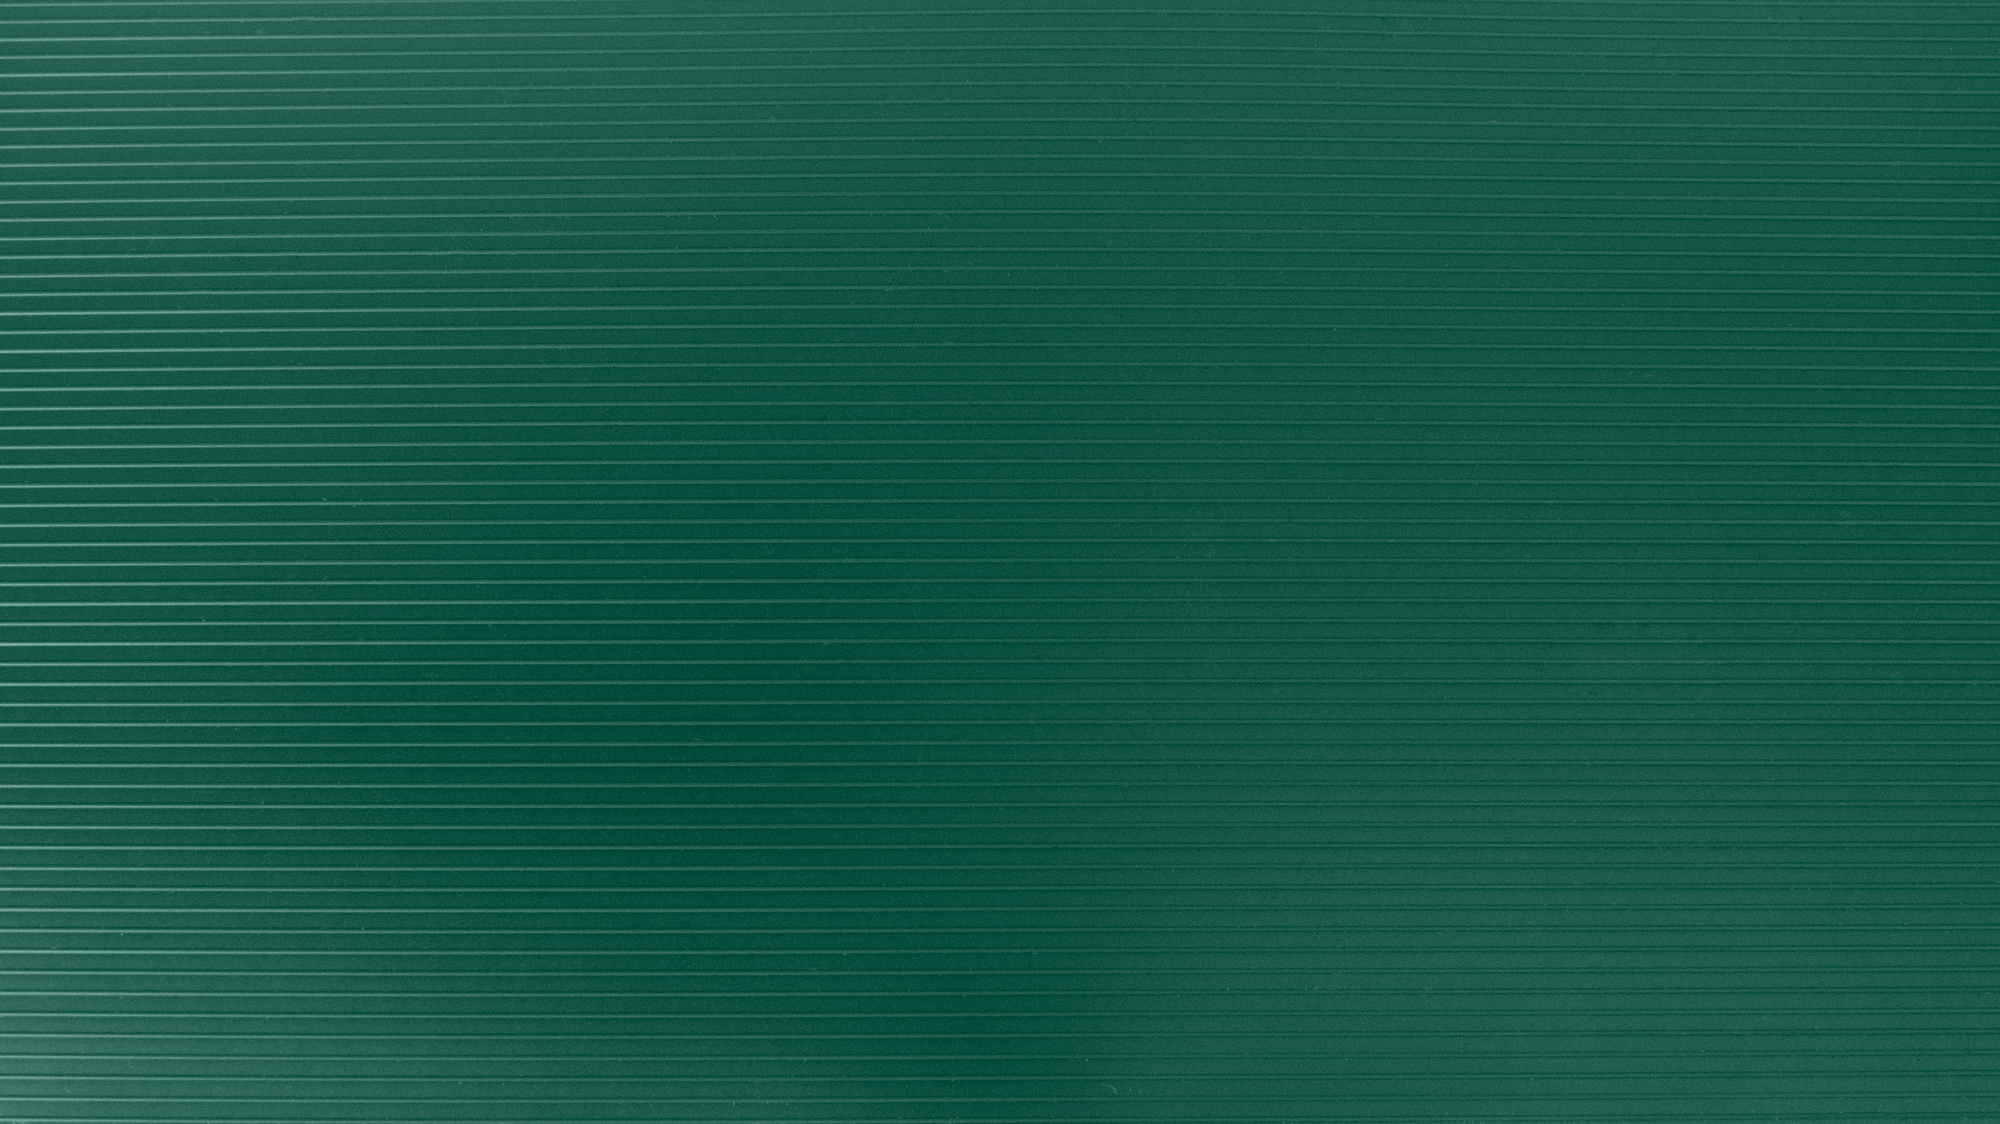 Taśma Ogrodzeniowa do Paneli Zielony PVC Premium Linarem 1200 g/m2 19cm x 26m